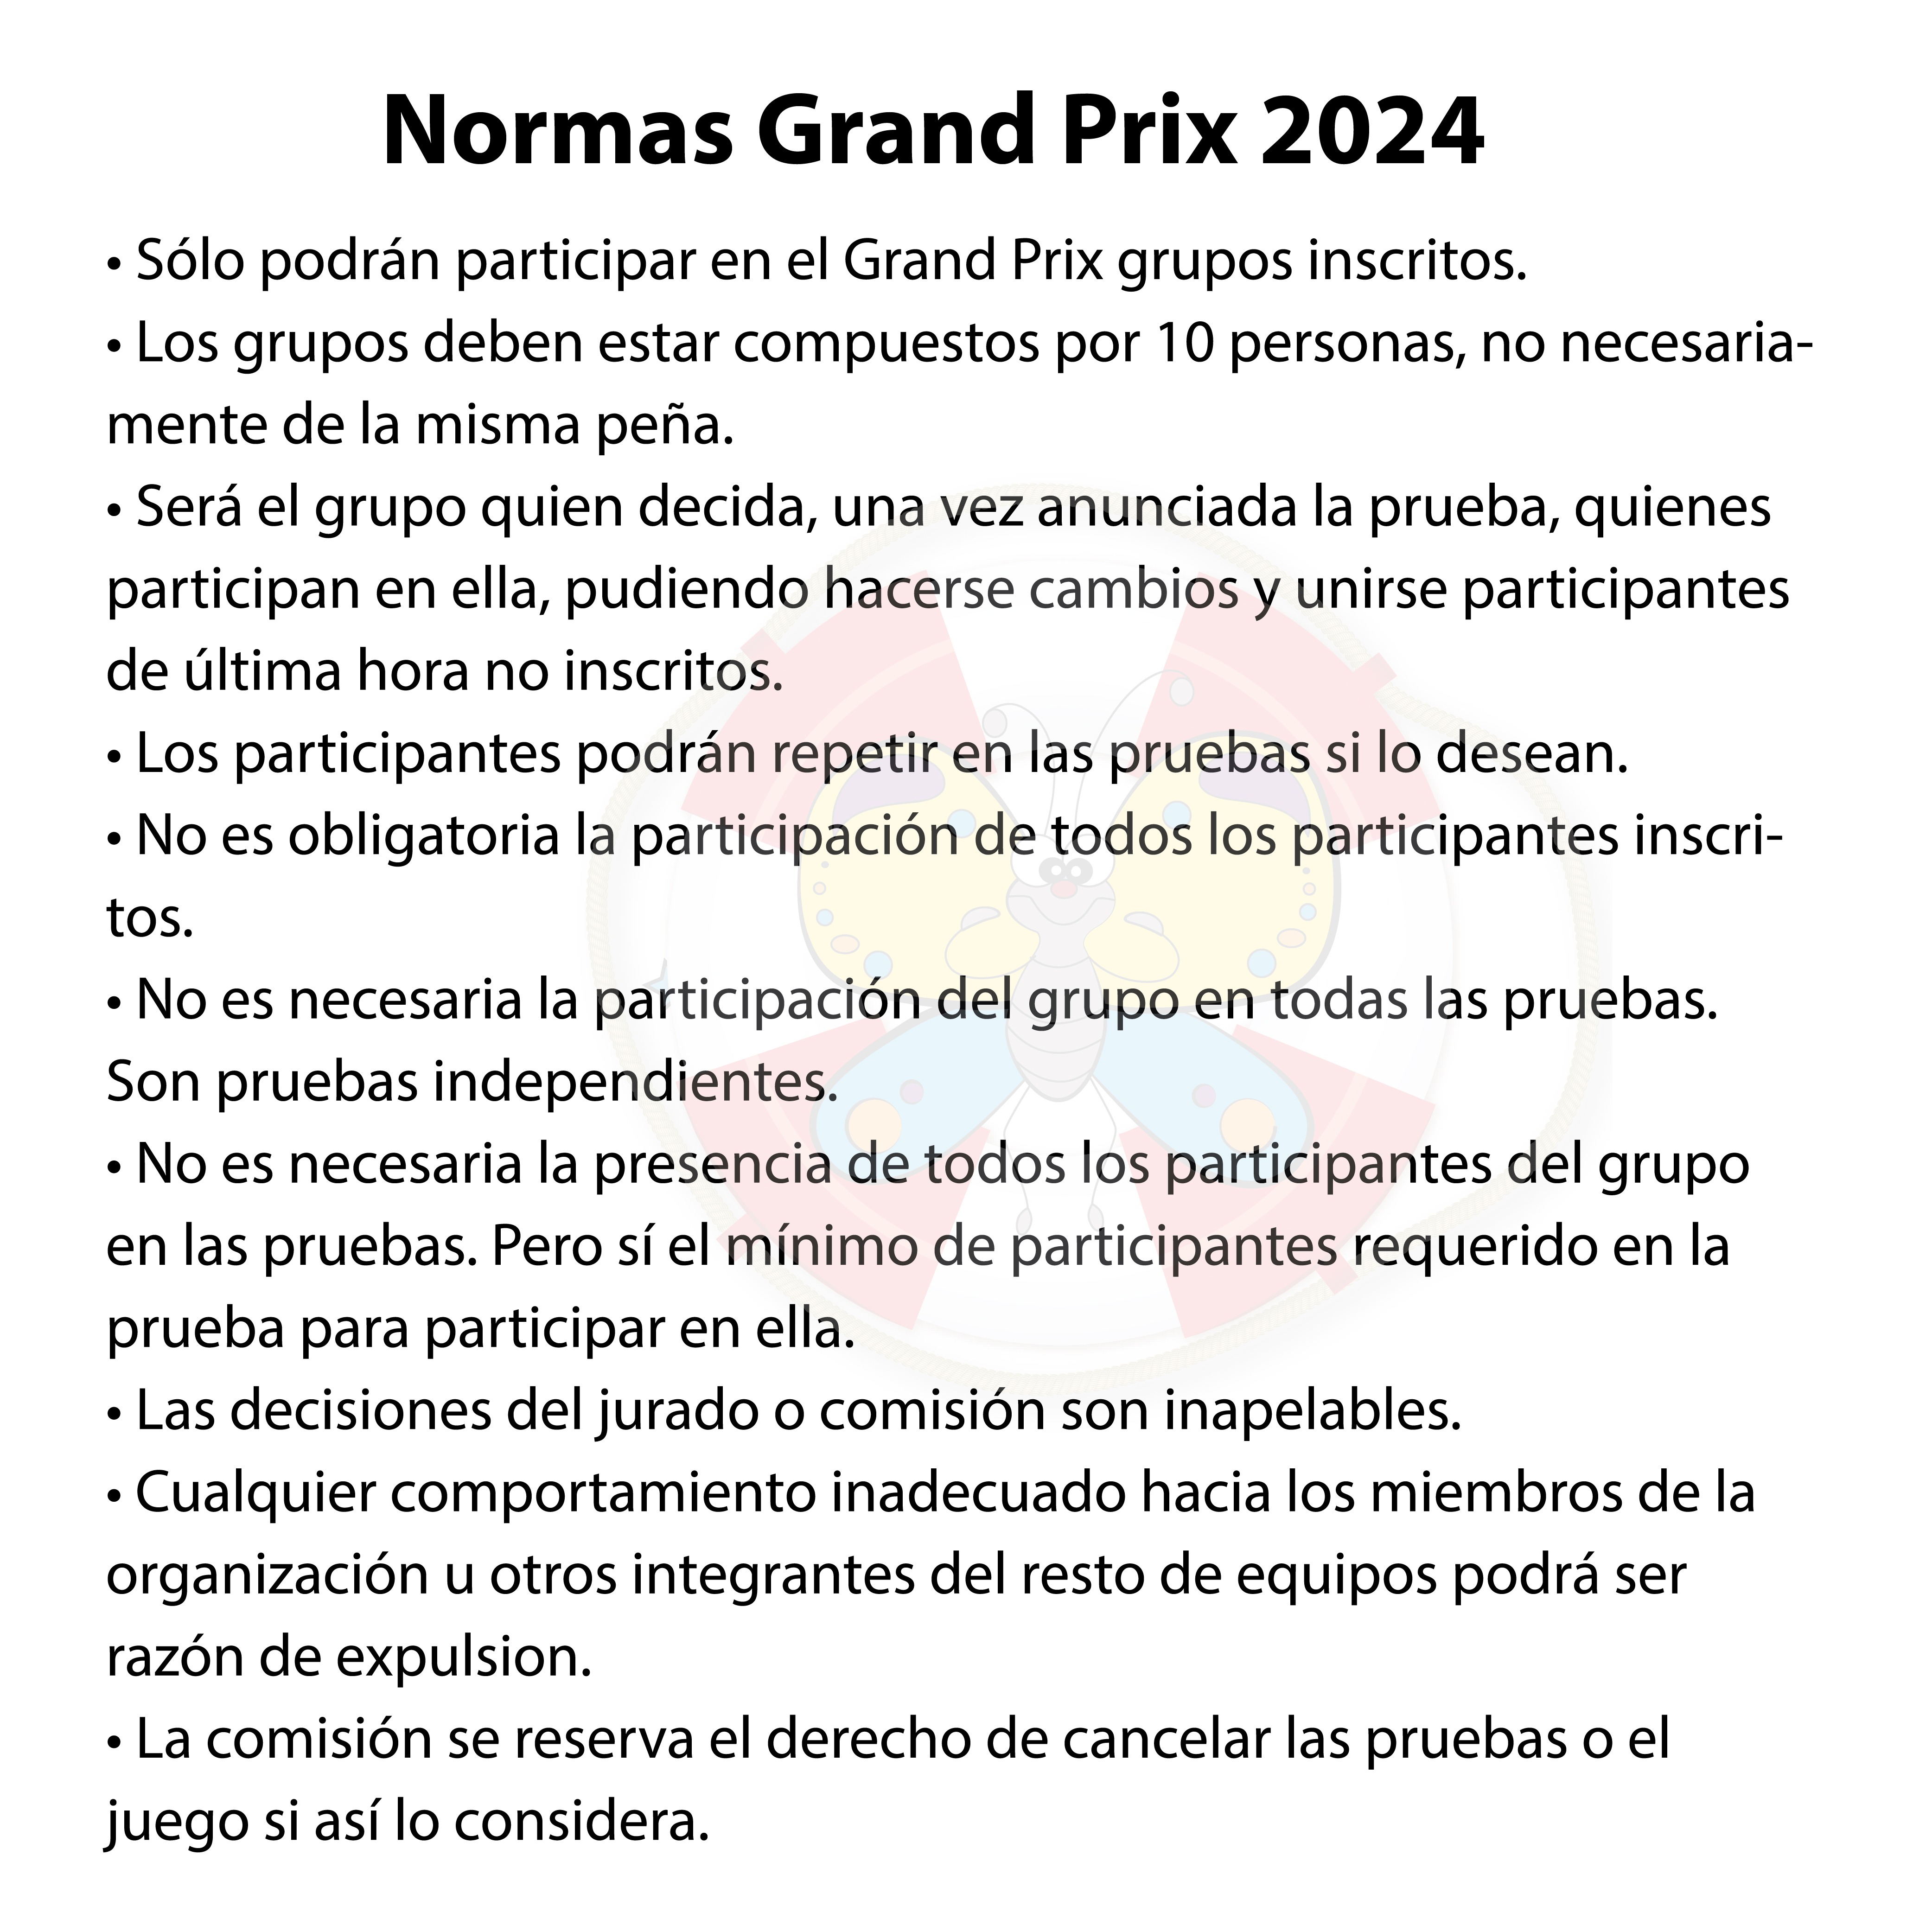 NORMAS GRAN PRIX 2024